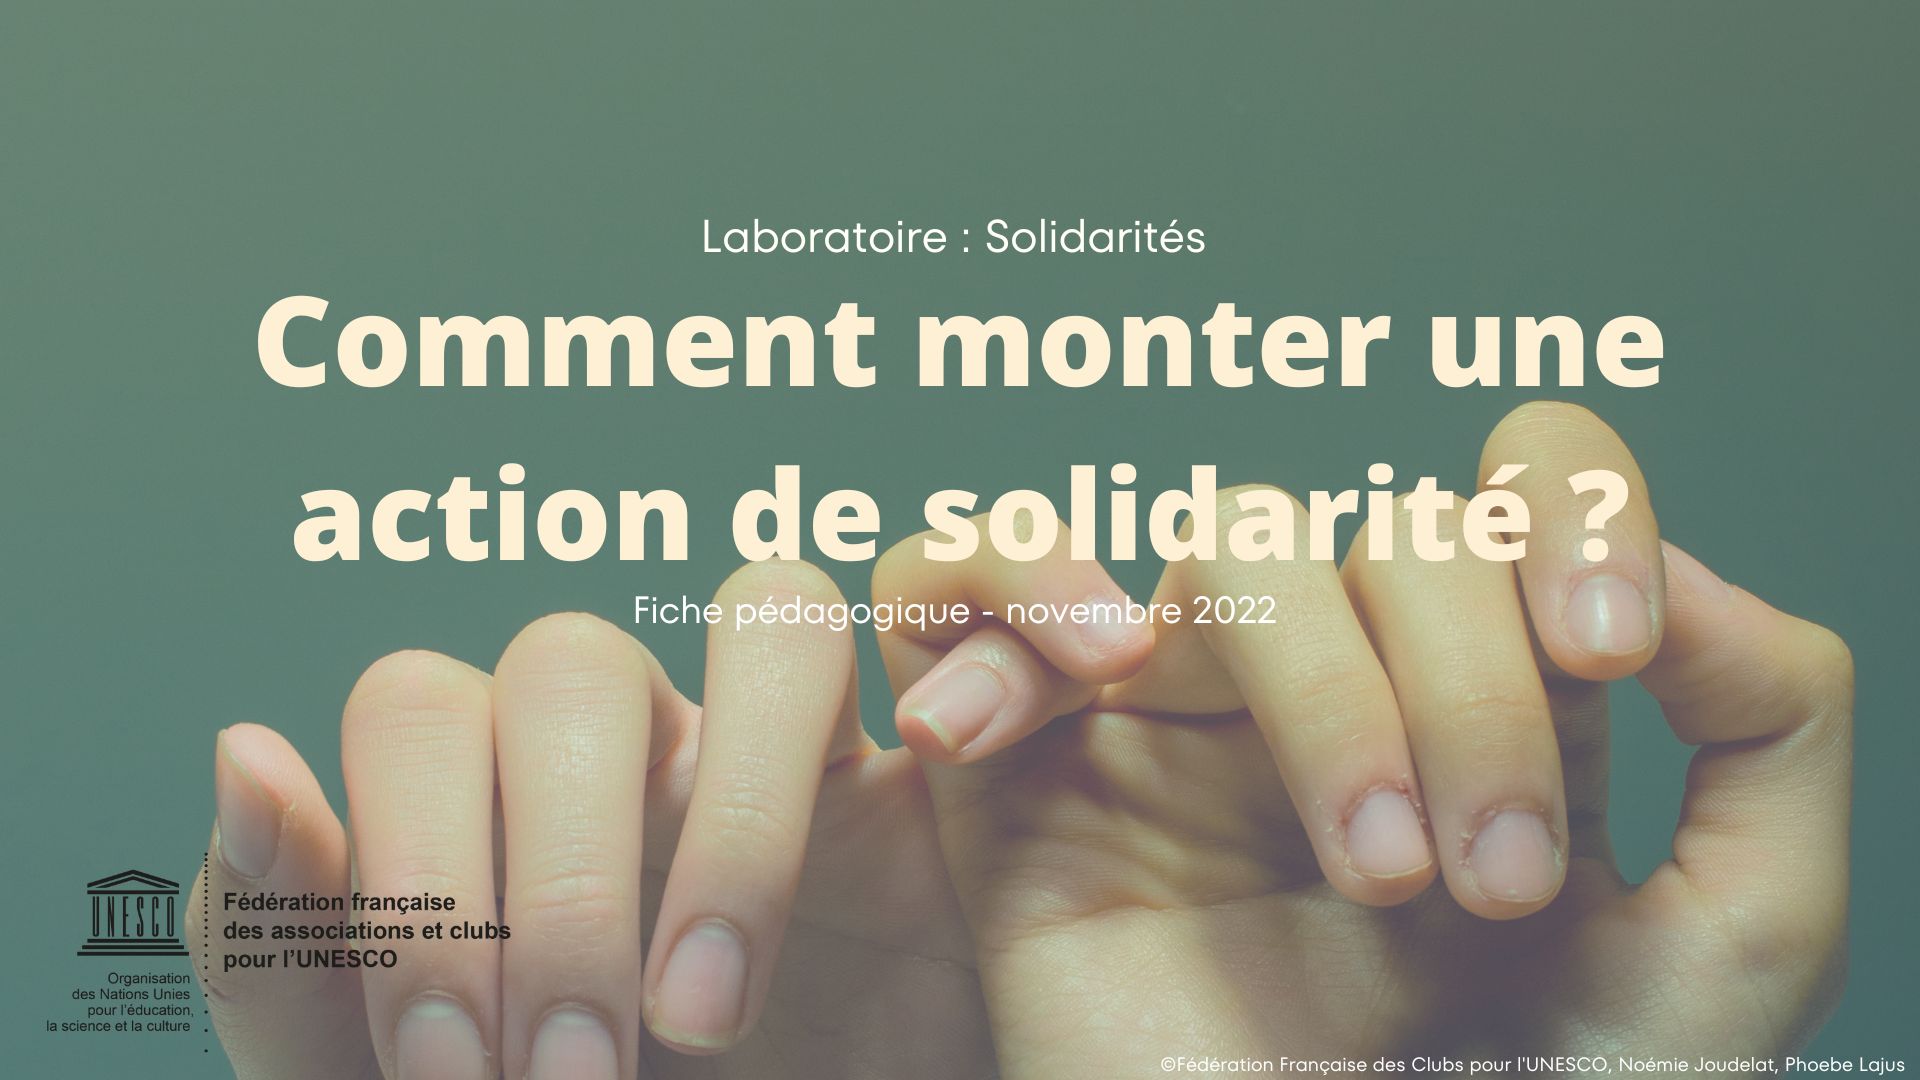 Photo de deux mains avec les petits doigts enlacés sur fond vert. Sur la photo le titre de la fiche pédagogique en gros : "Comment monter une action de solidarité ?"